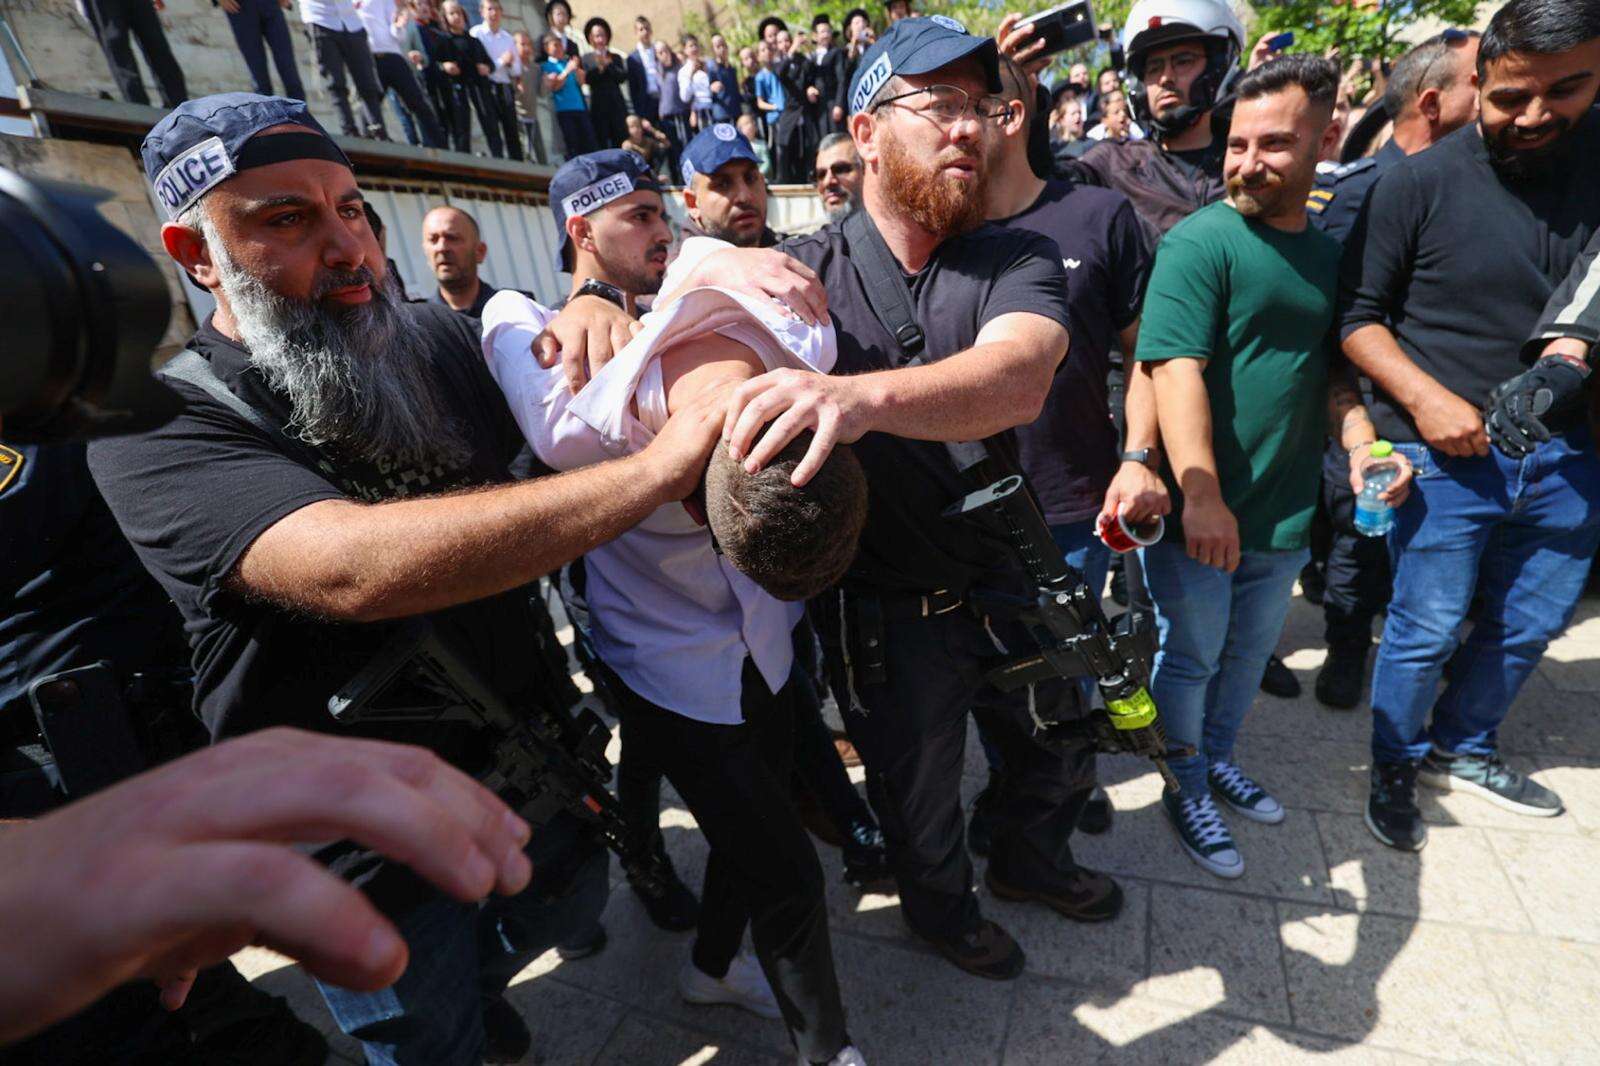 האזרח שסייע למשטרה ללכוד את המחבלים בירושלים משחזר: "ראיתי שני אנשים רצים עם הידיים על הראש"